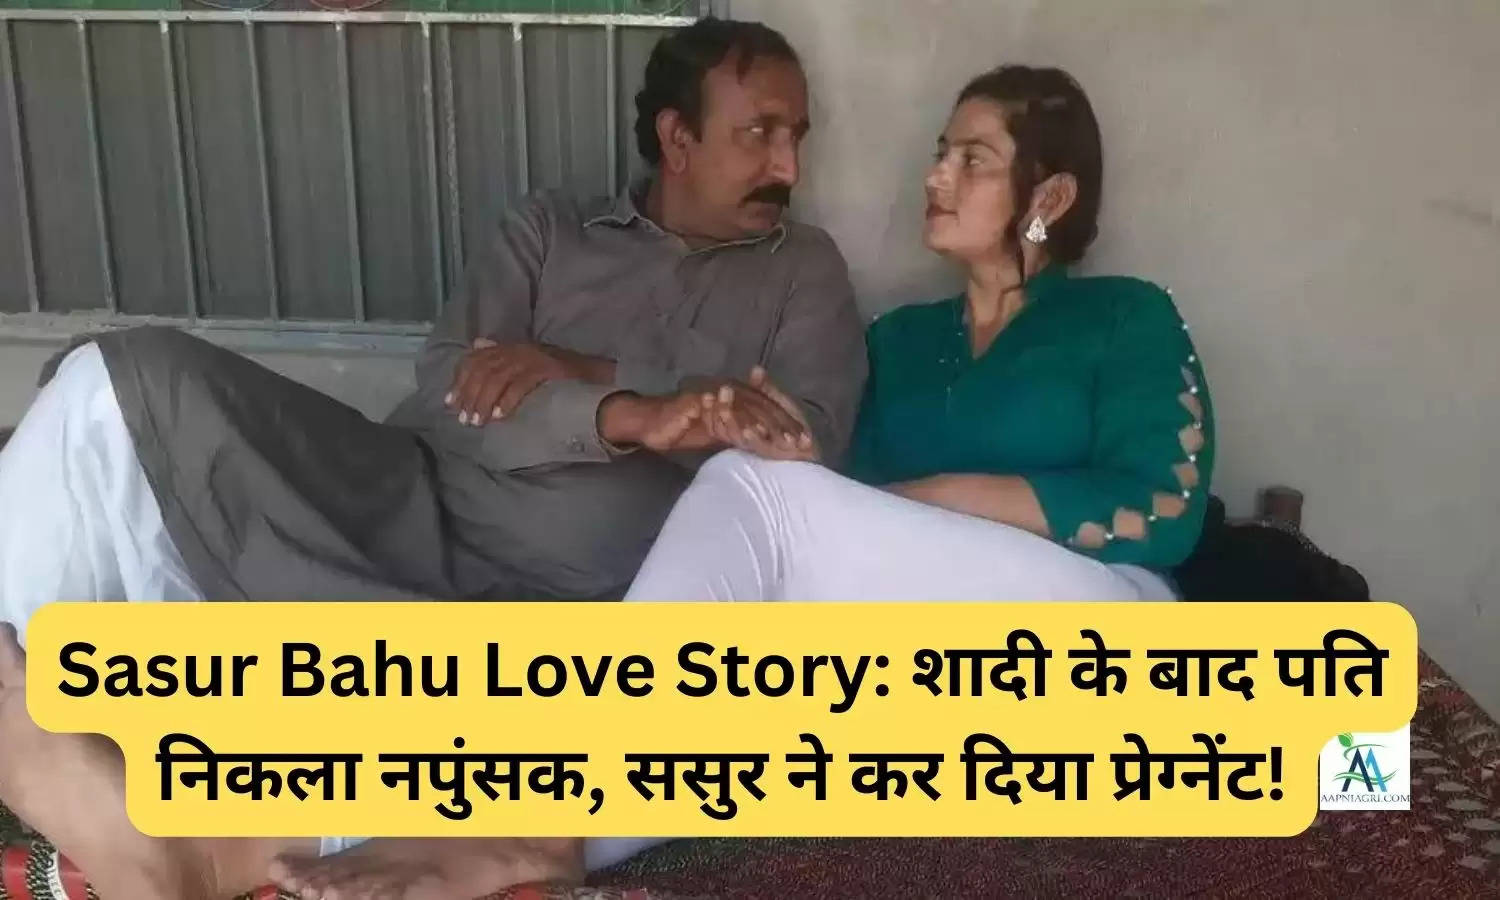 Sasur Bahu Love Story: शादी के बाद पति निकला नपुंसक, ससुर ने कर दिया प्रेग्नेंट!